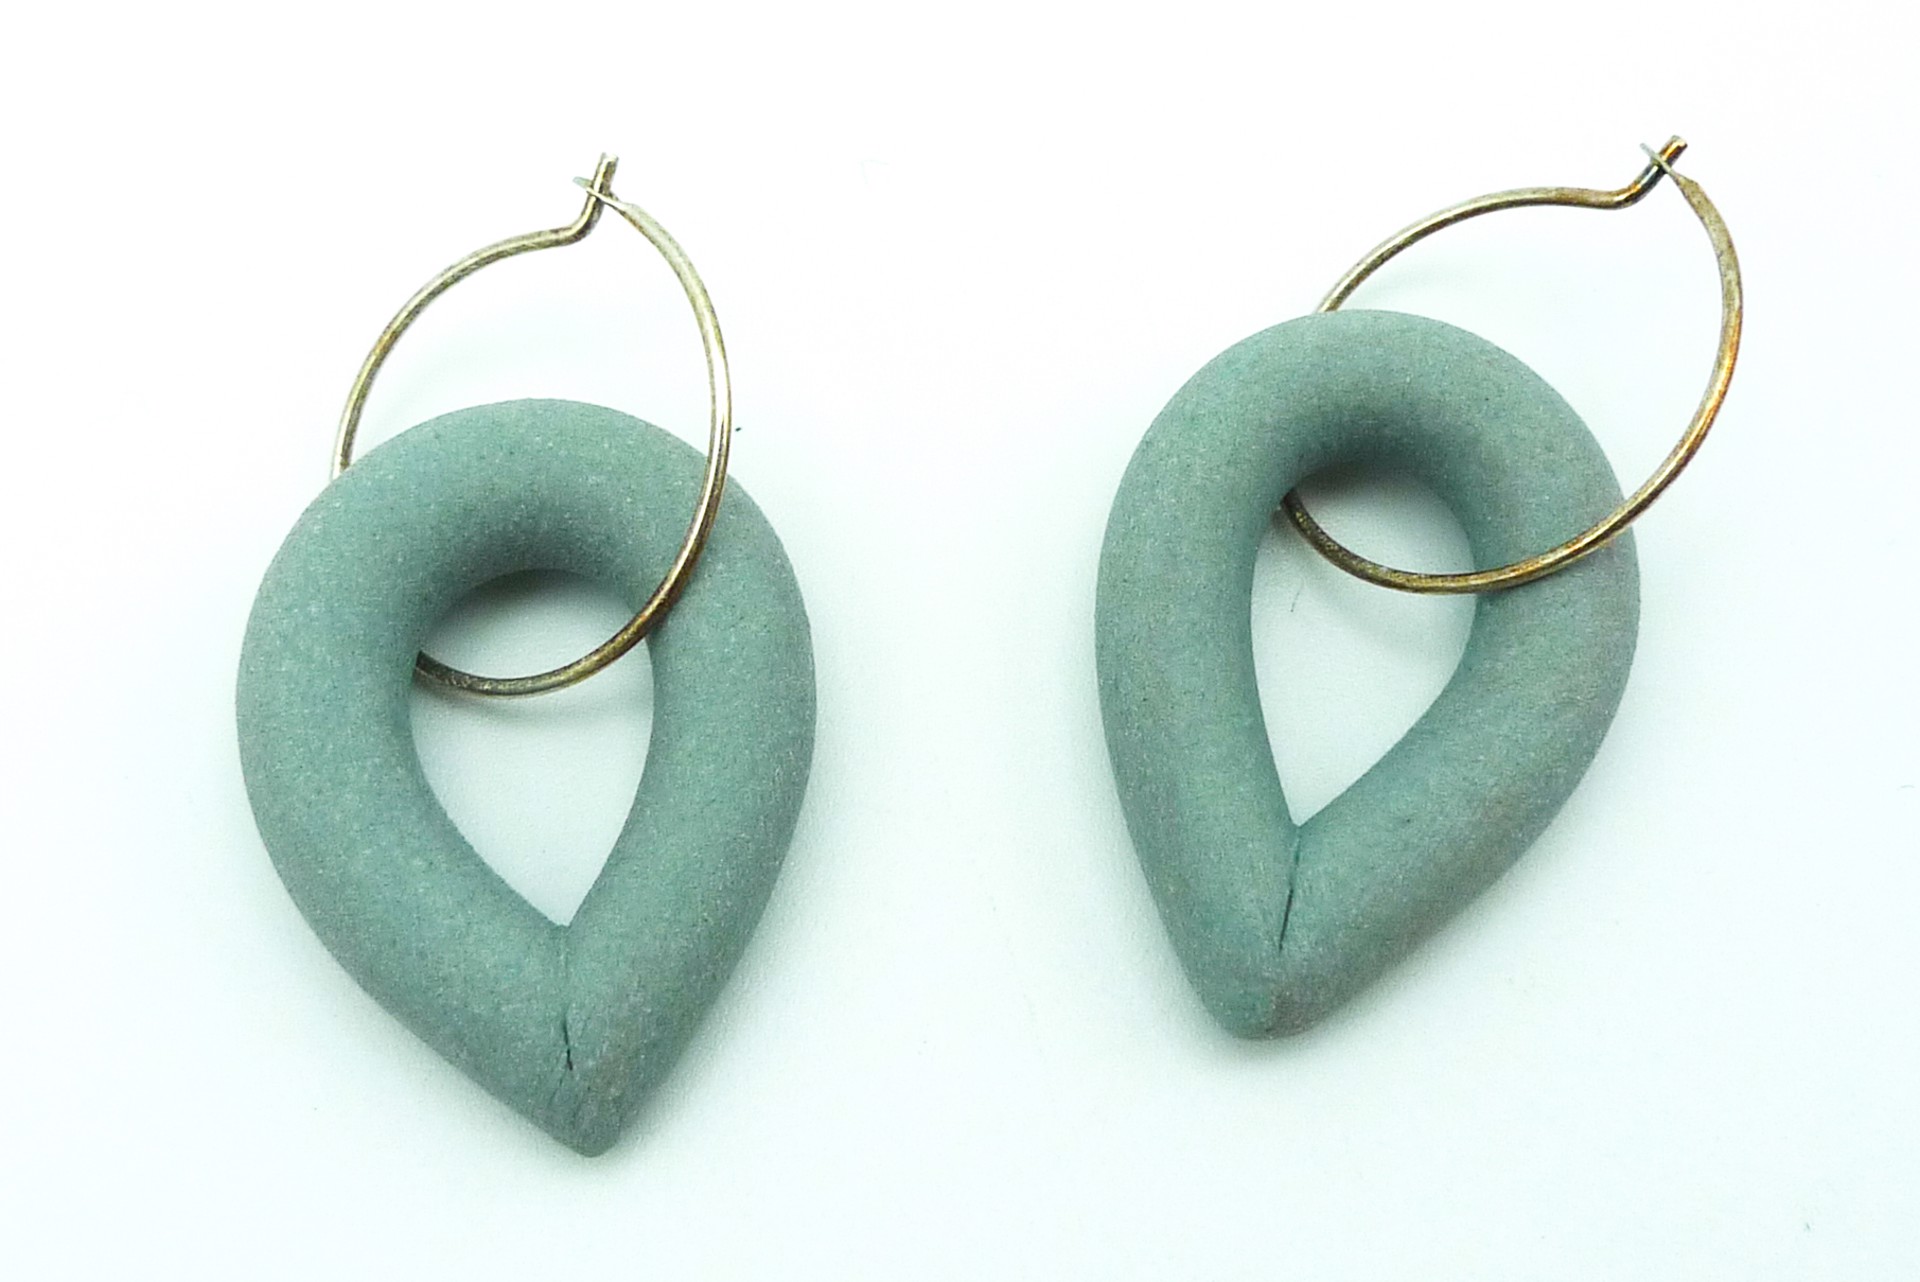 Earrings by Rachelle Miller